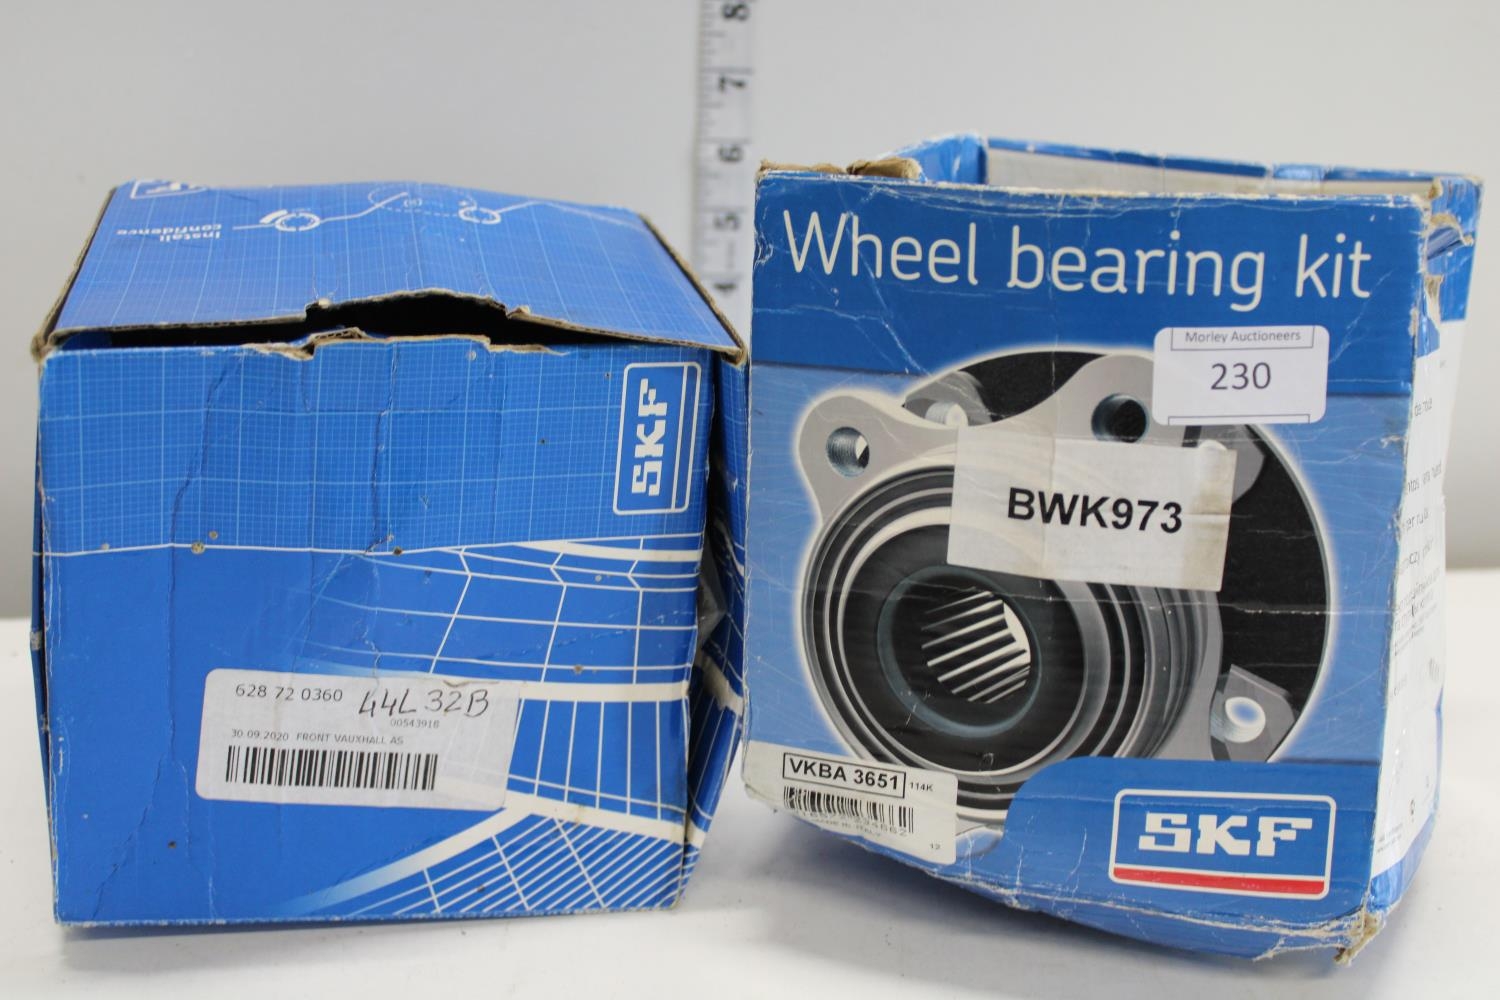 Two wheel bearing kits